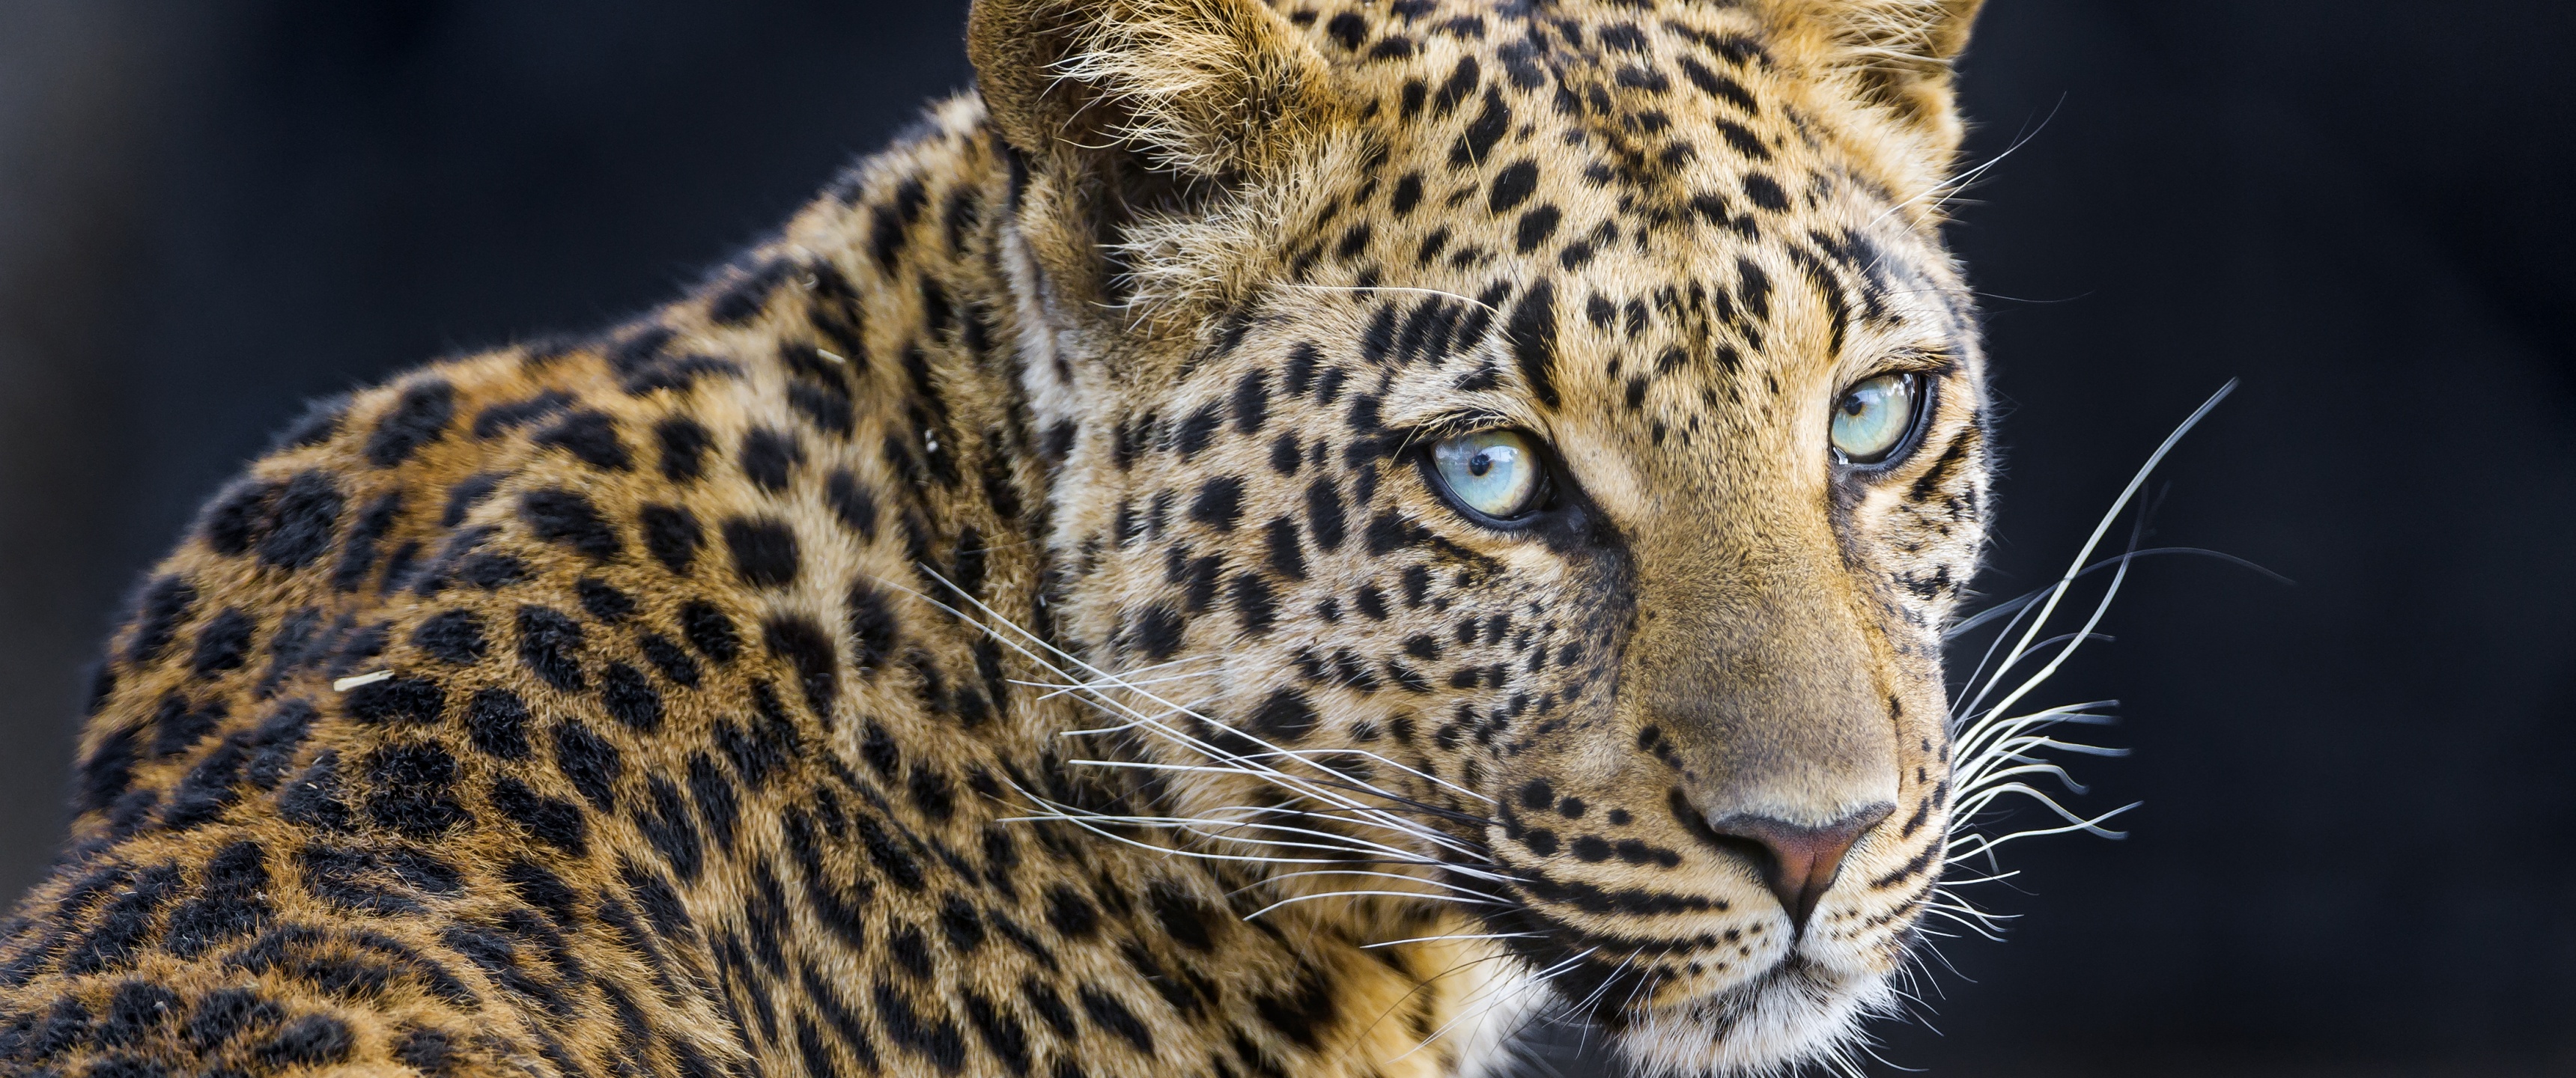 Leopardess Wallpaper 4K, Jaguar, Closeup, Animals, #3180